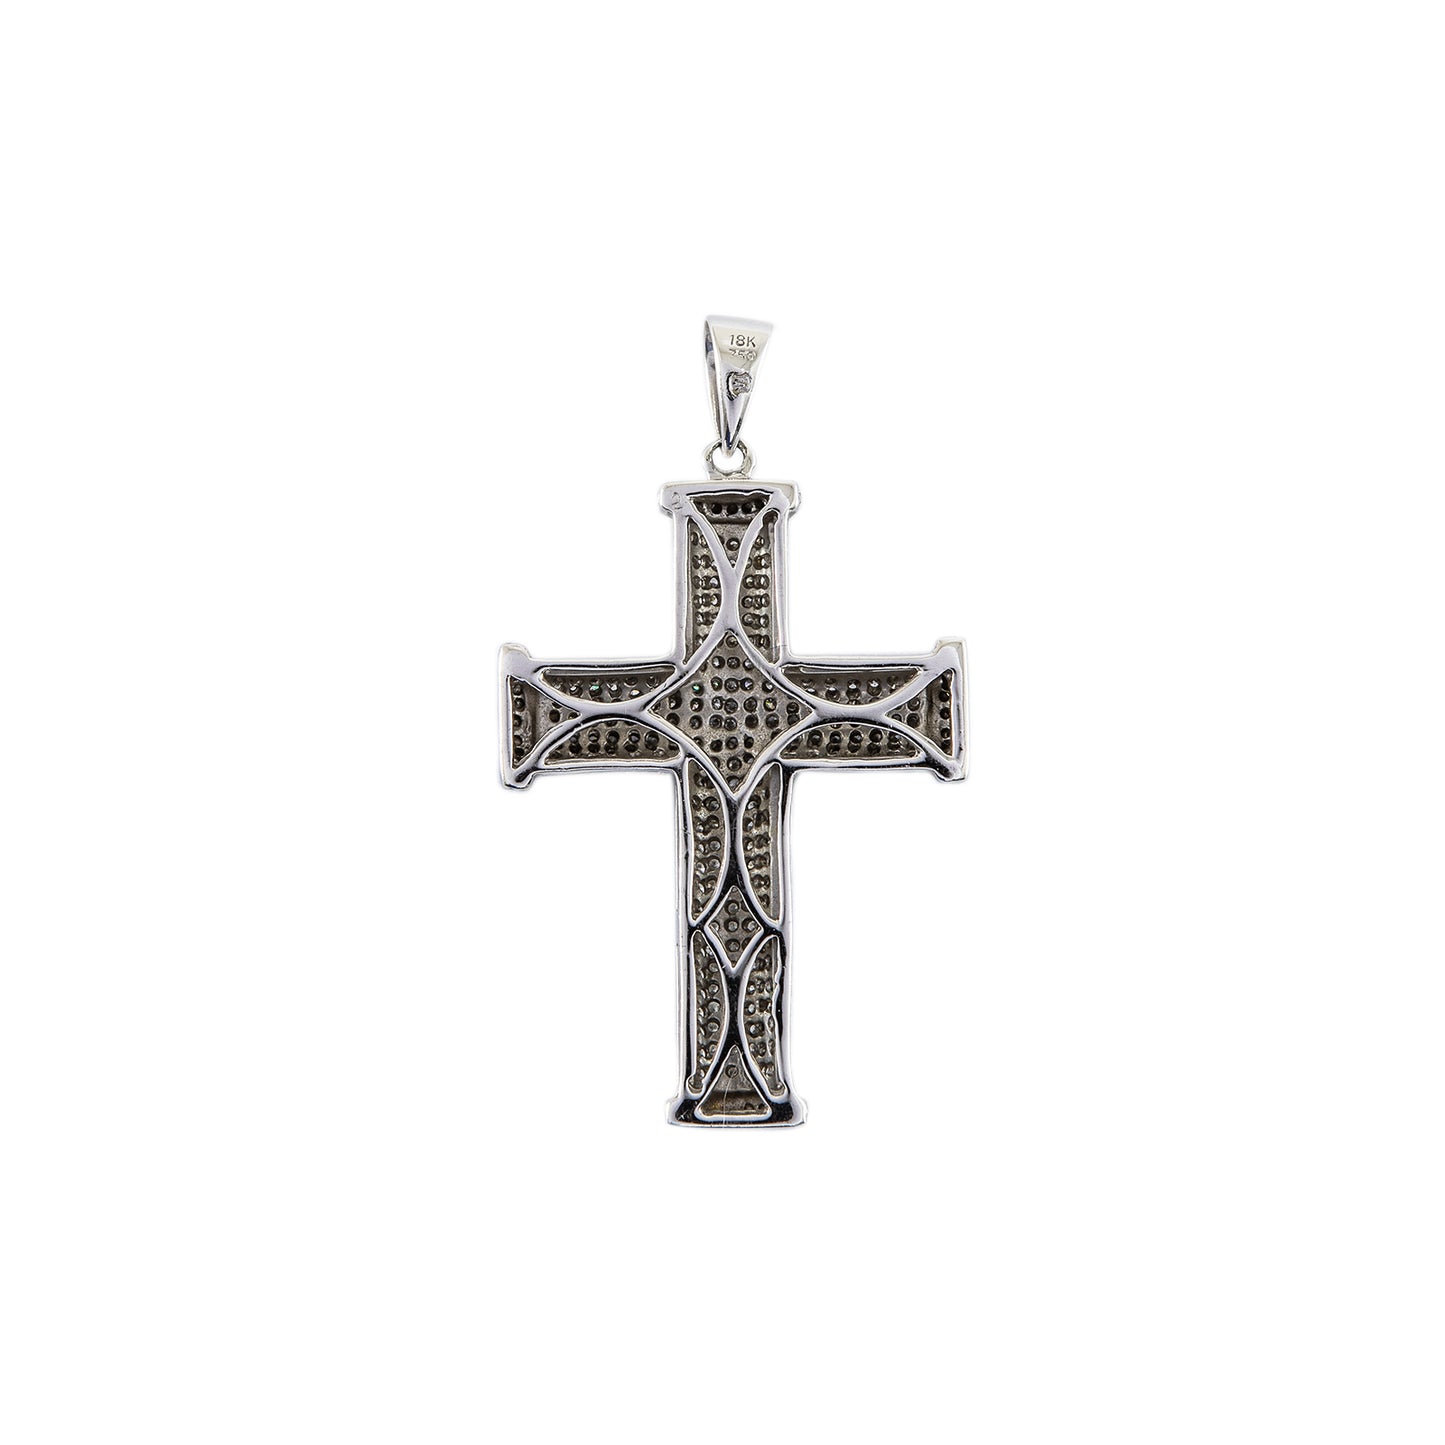 Diamond cross pendant white gold 18K 750 women's jewelry men's jewelry gold pendant 